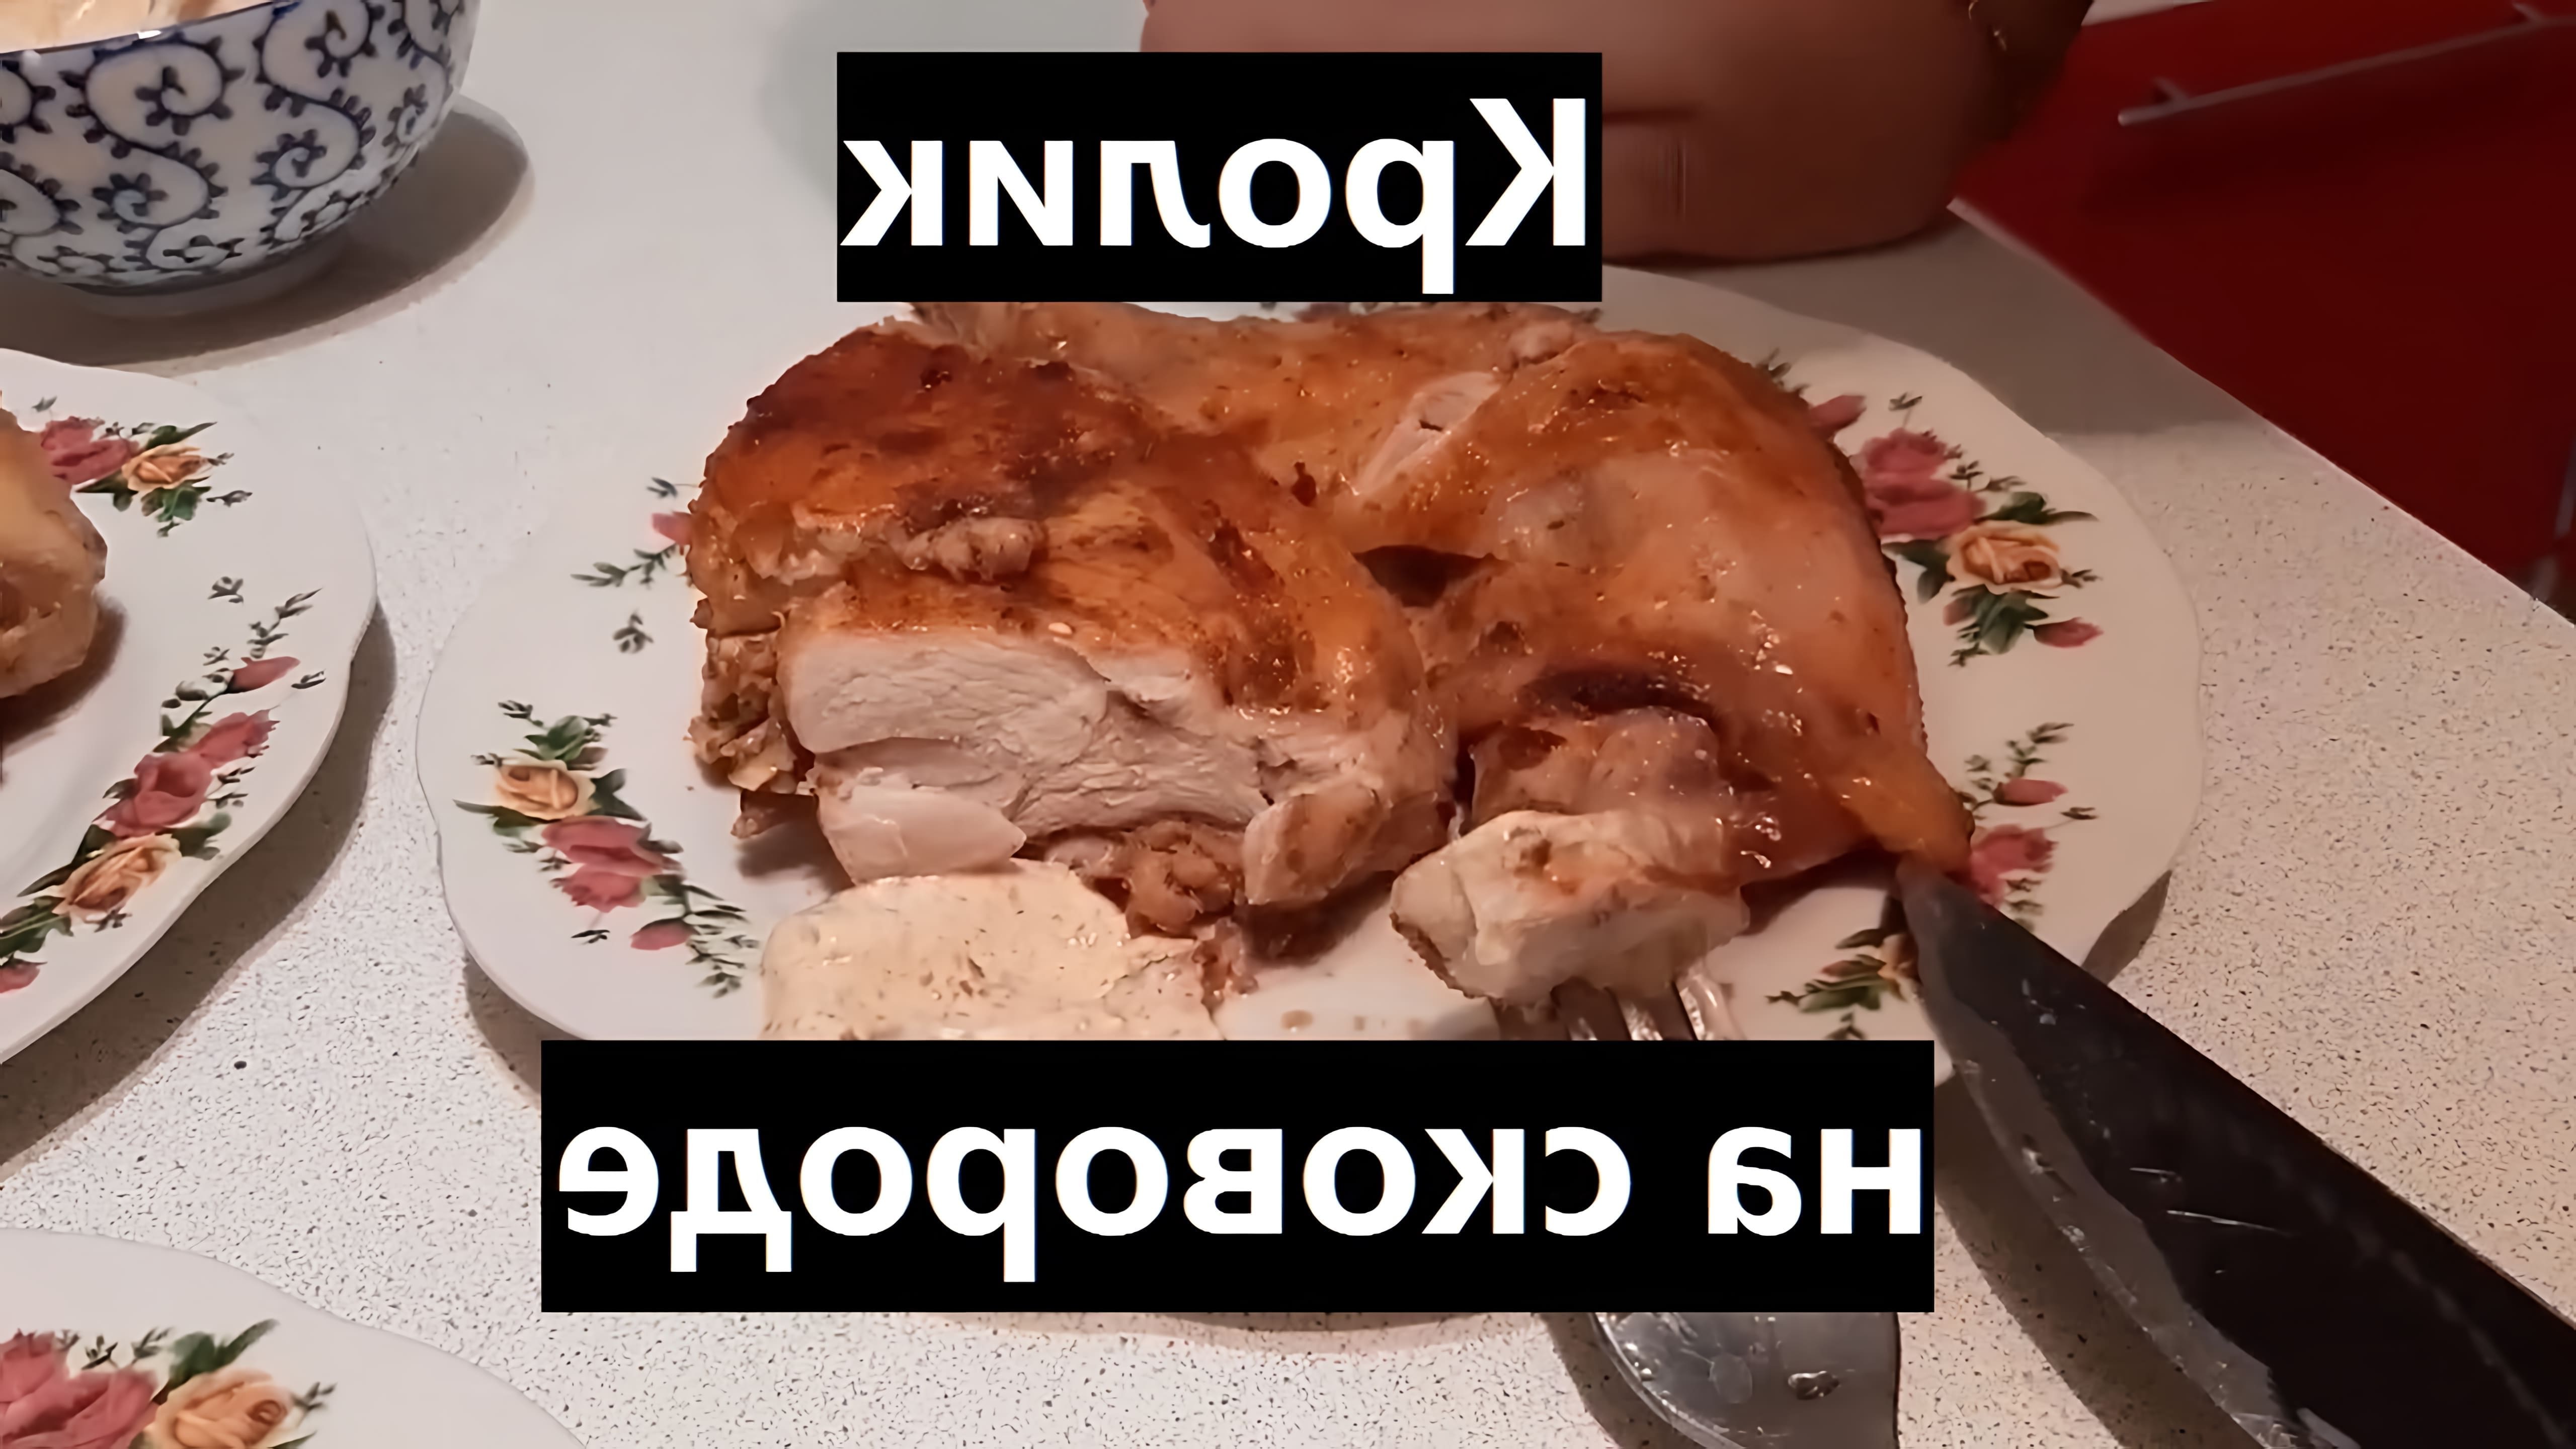 В этом видео-ролике показан быстрый и простой рецепт приготовления вкусного и сочного кролика на сковороде в аджике